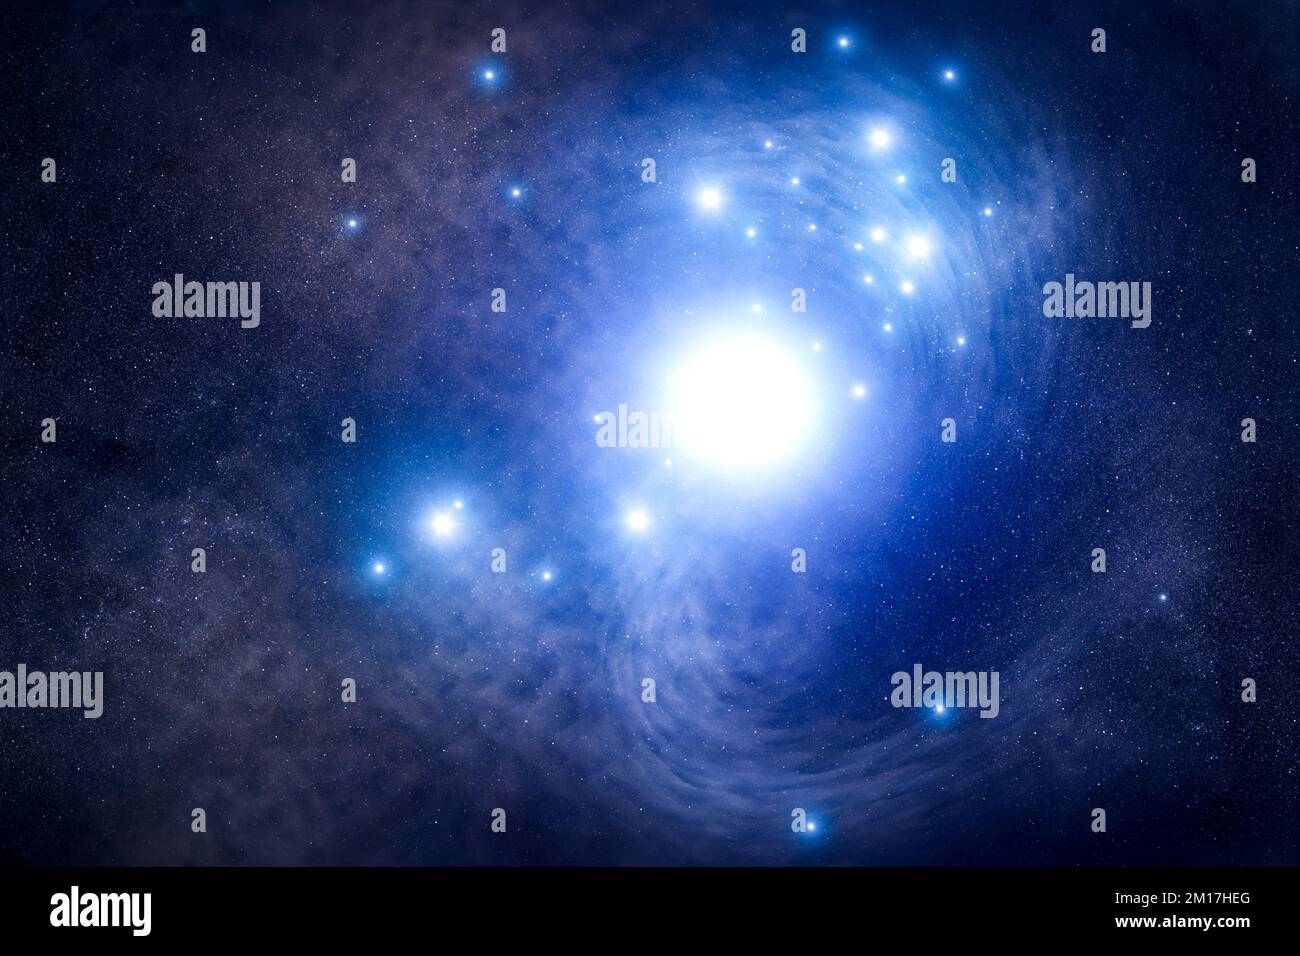 Millionen von Licht sind weg, schwer zu fassender Stern hinter einer Supernova in einer Galaxie. Blauer Superriesen-Stern. Digital verbesserte Bildelemente der NASA Stockfoto